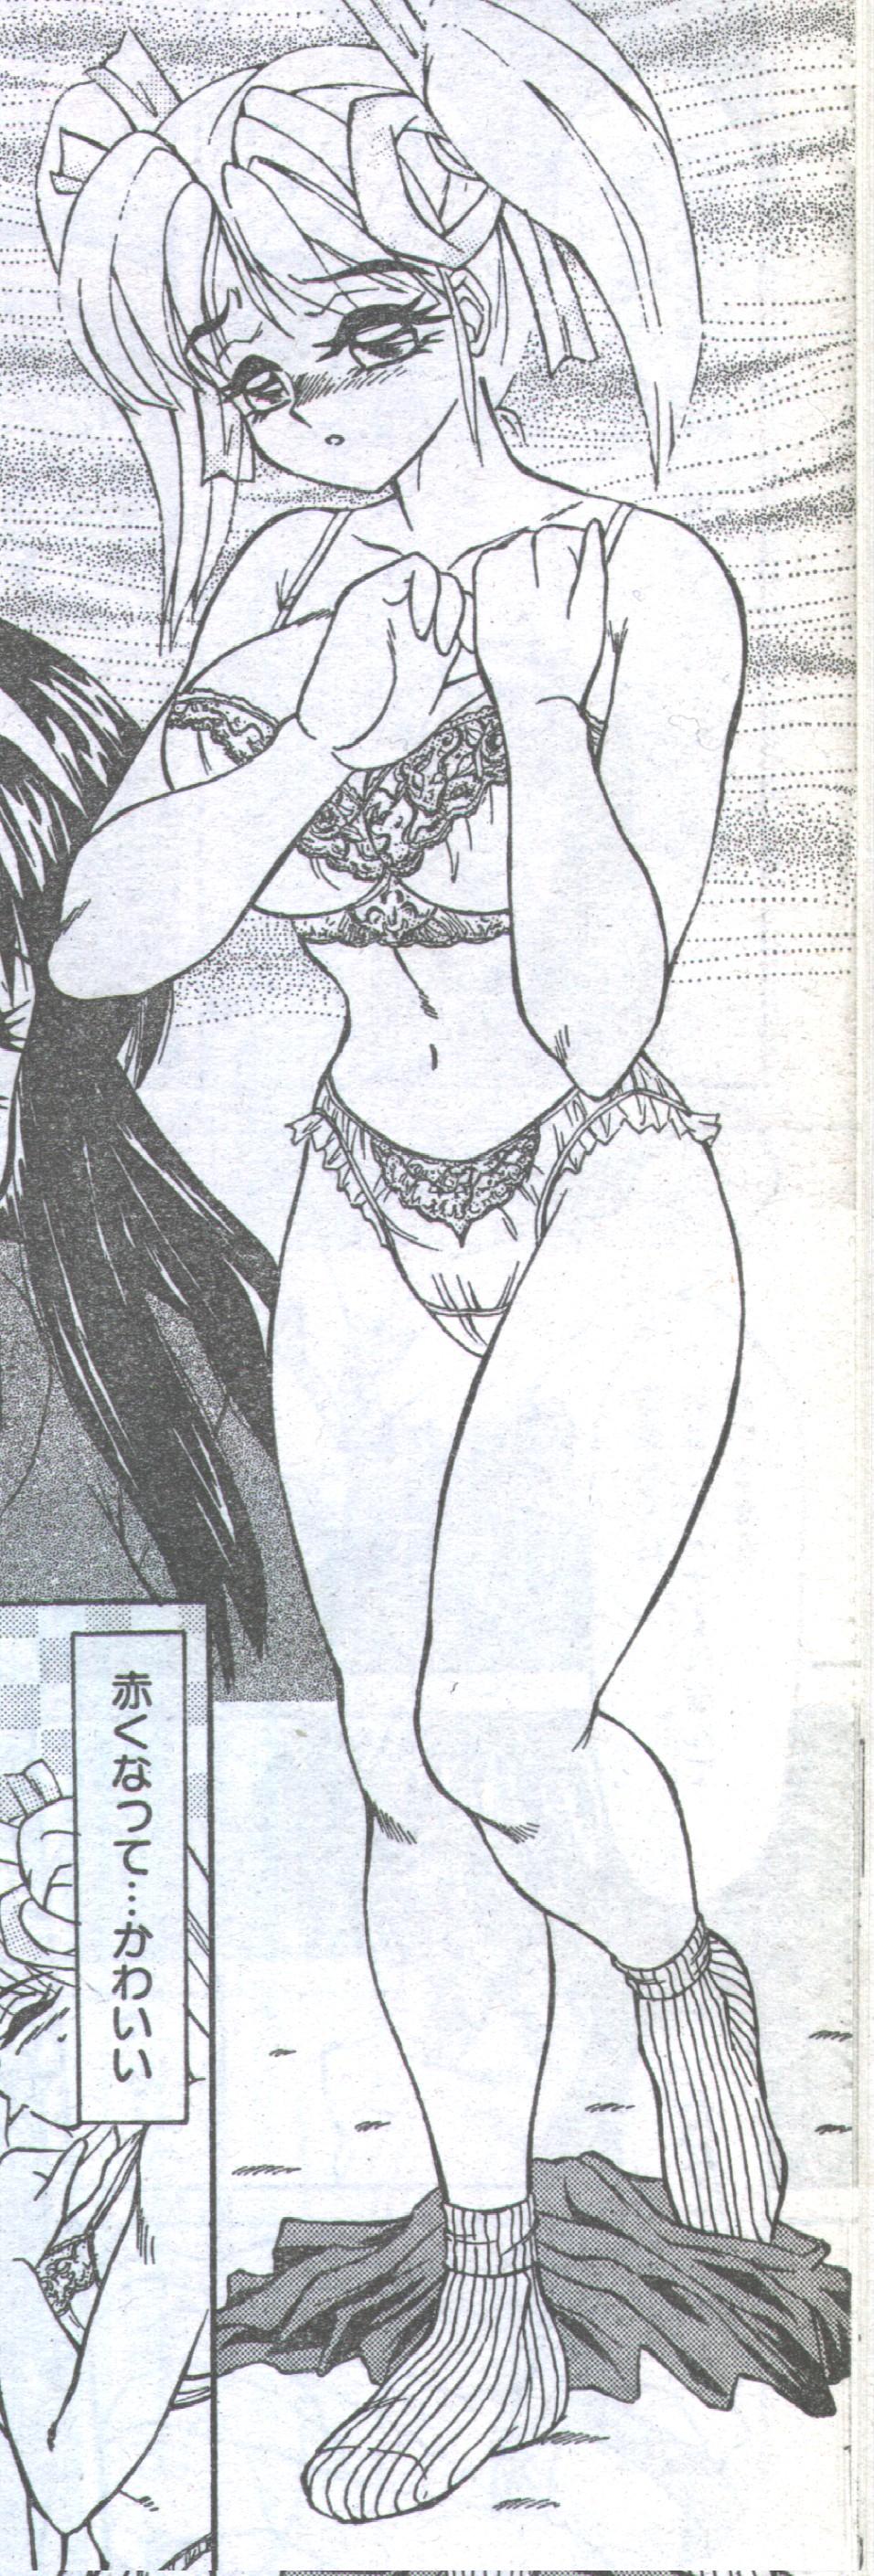 コットンコミック 1993年12月号 [不完全]